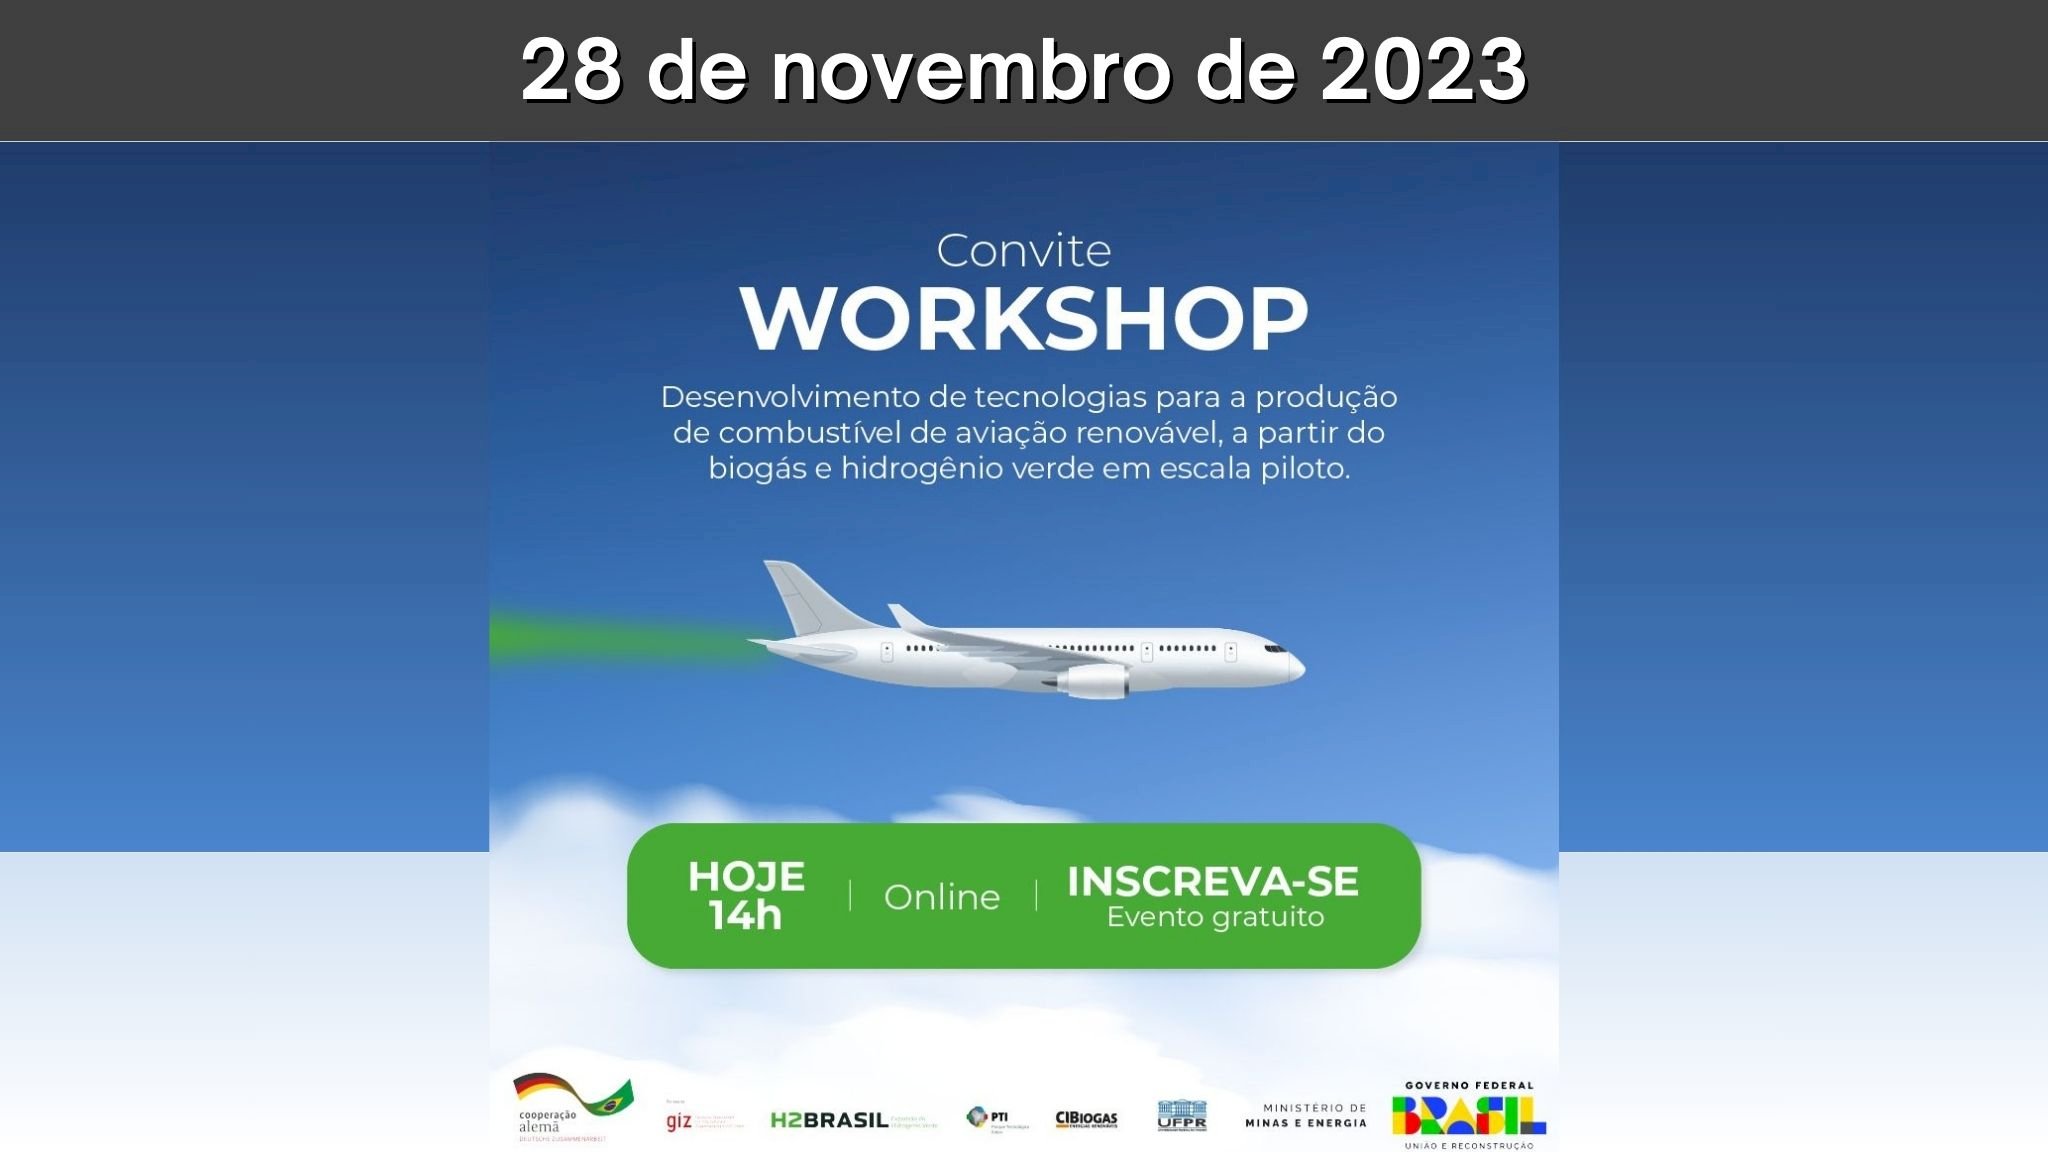 Workshop exclusivo - Desenvolvimento de tecnologias para a produção de combustível de aviação renovável, a partir do biogás e hidrogênio verde em escala piloto